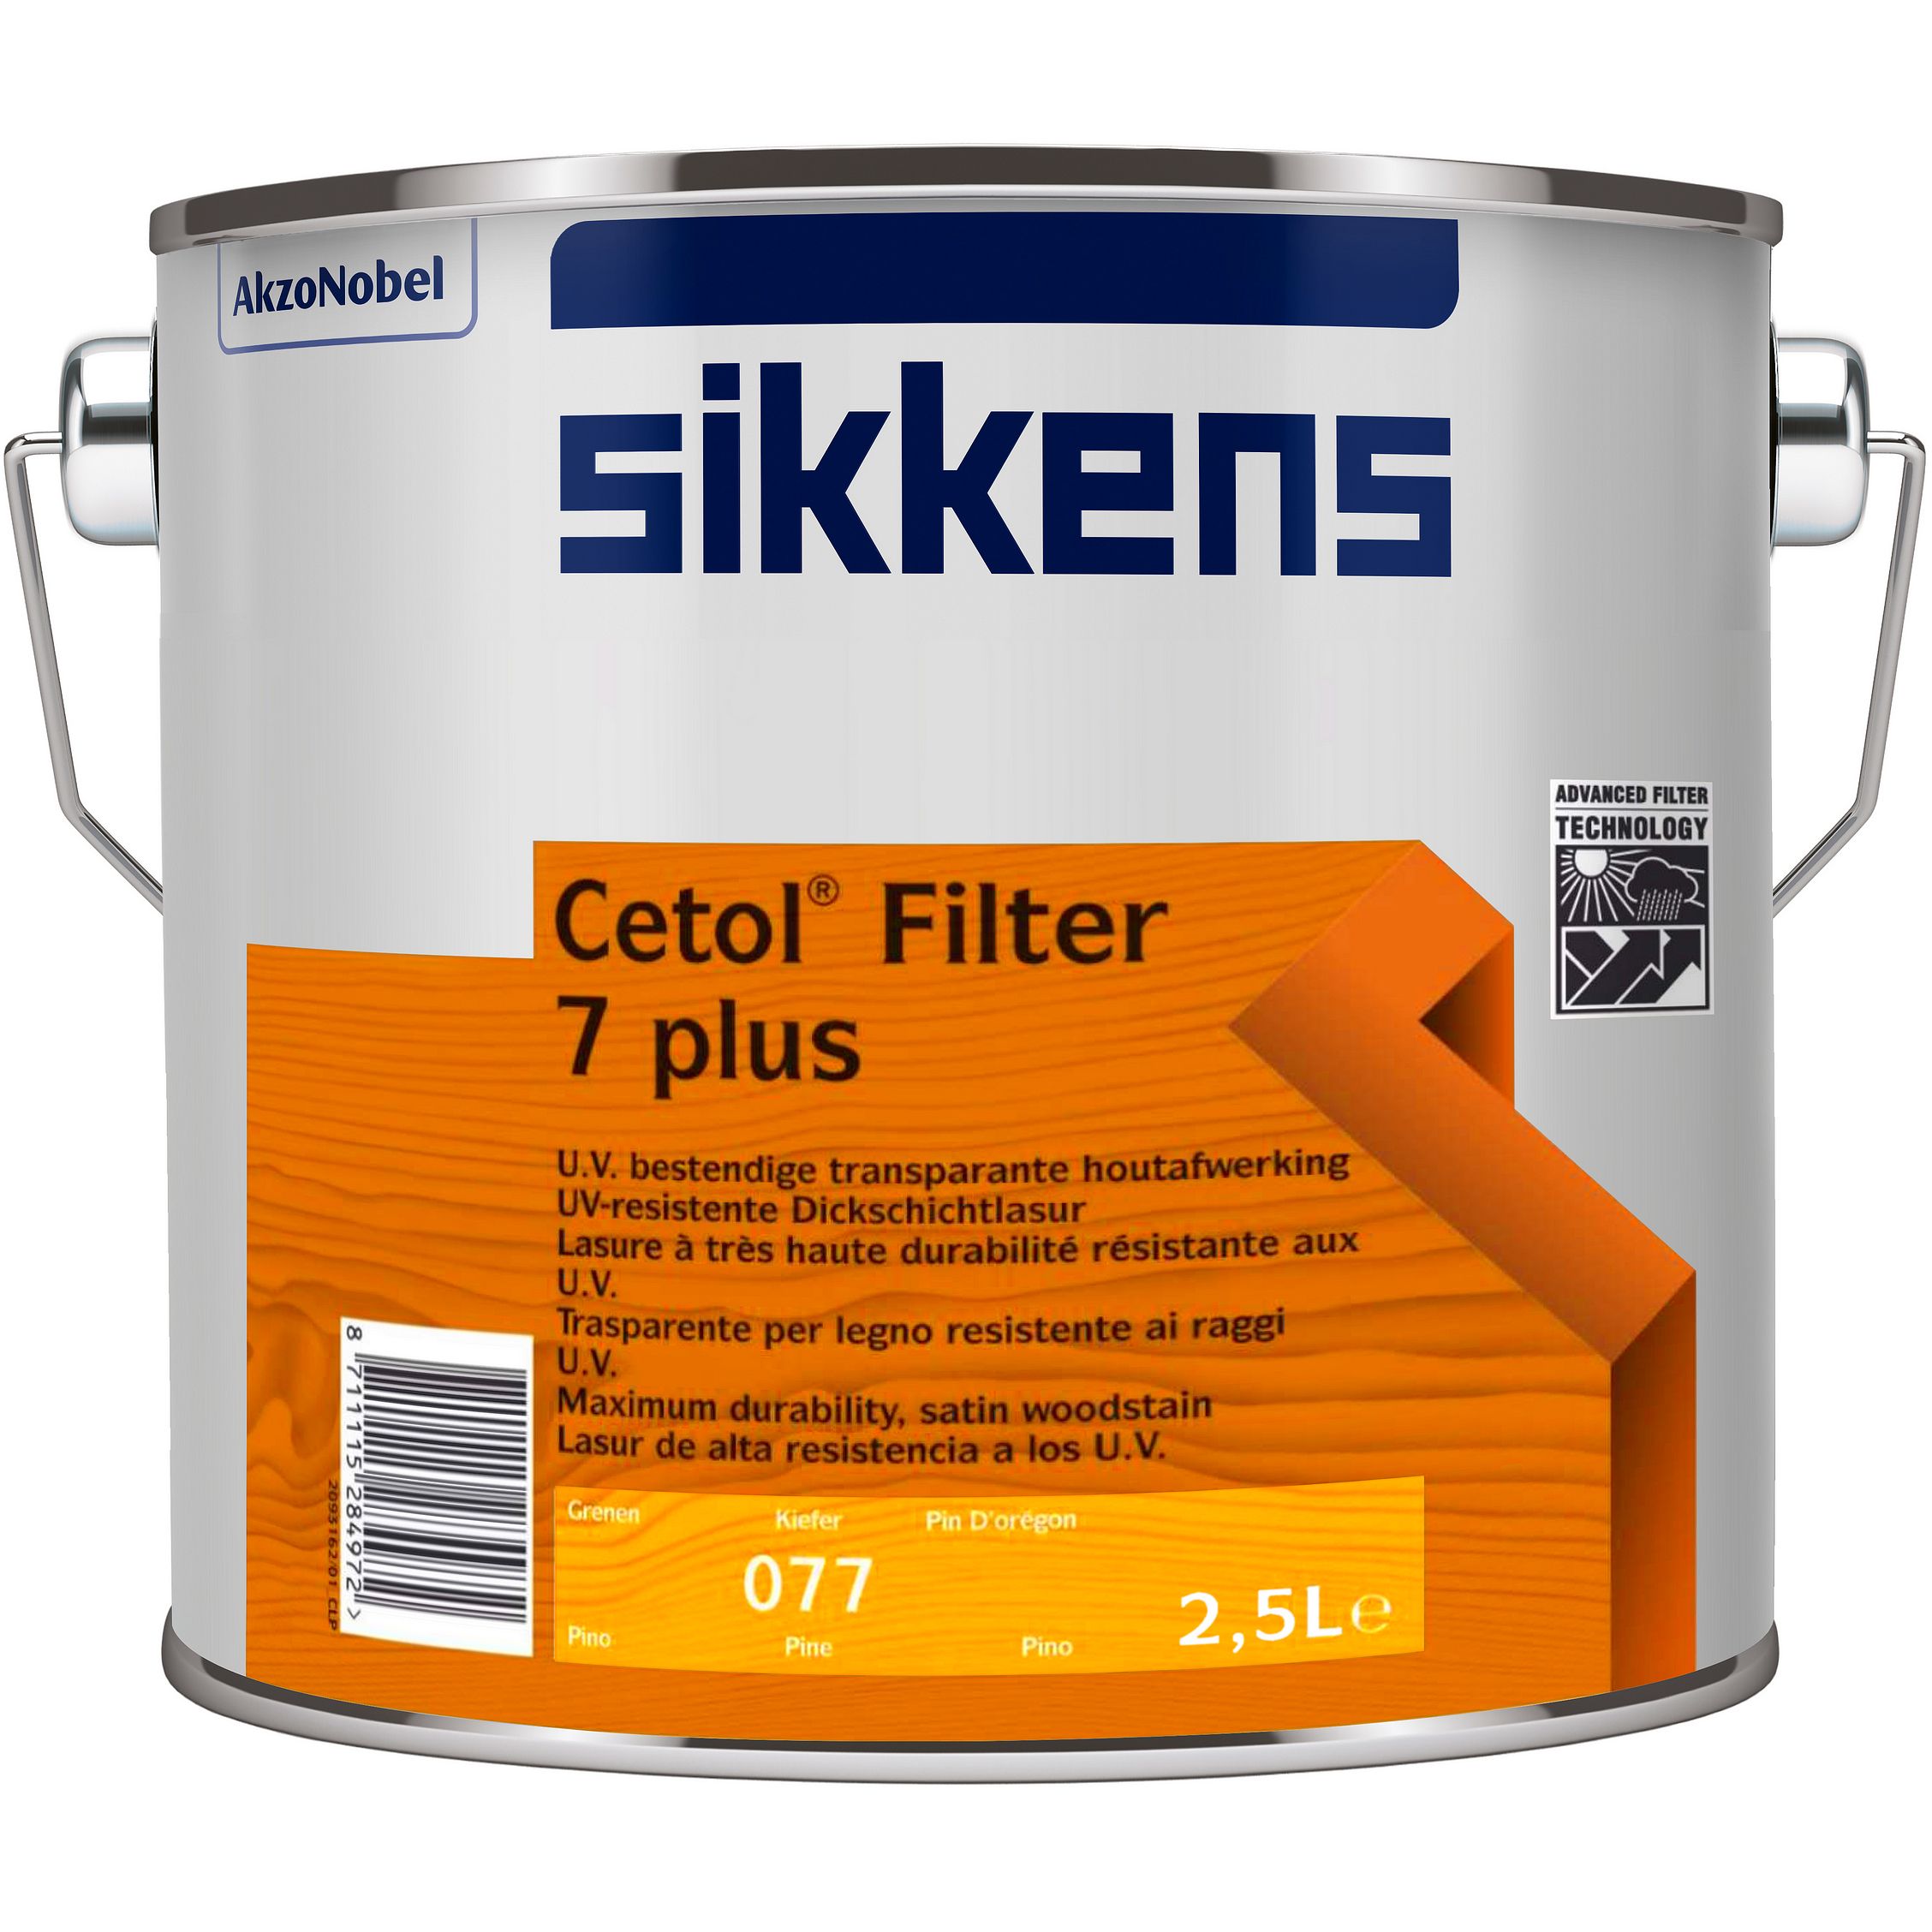 Cetol Filter 7